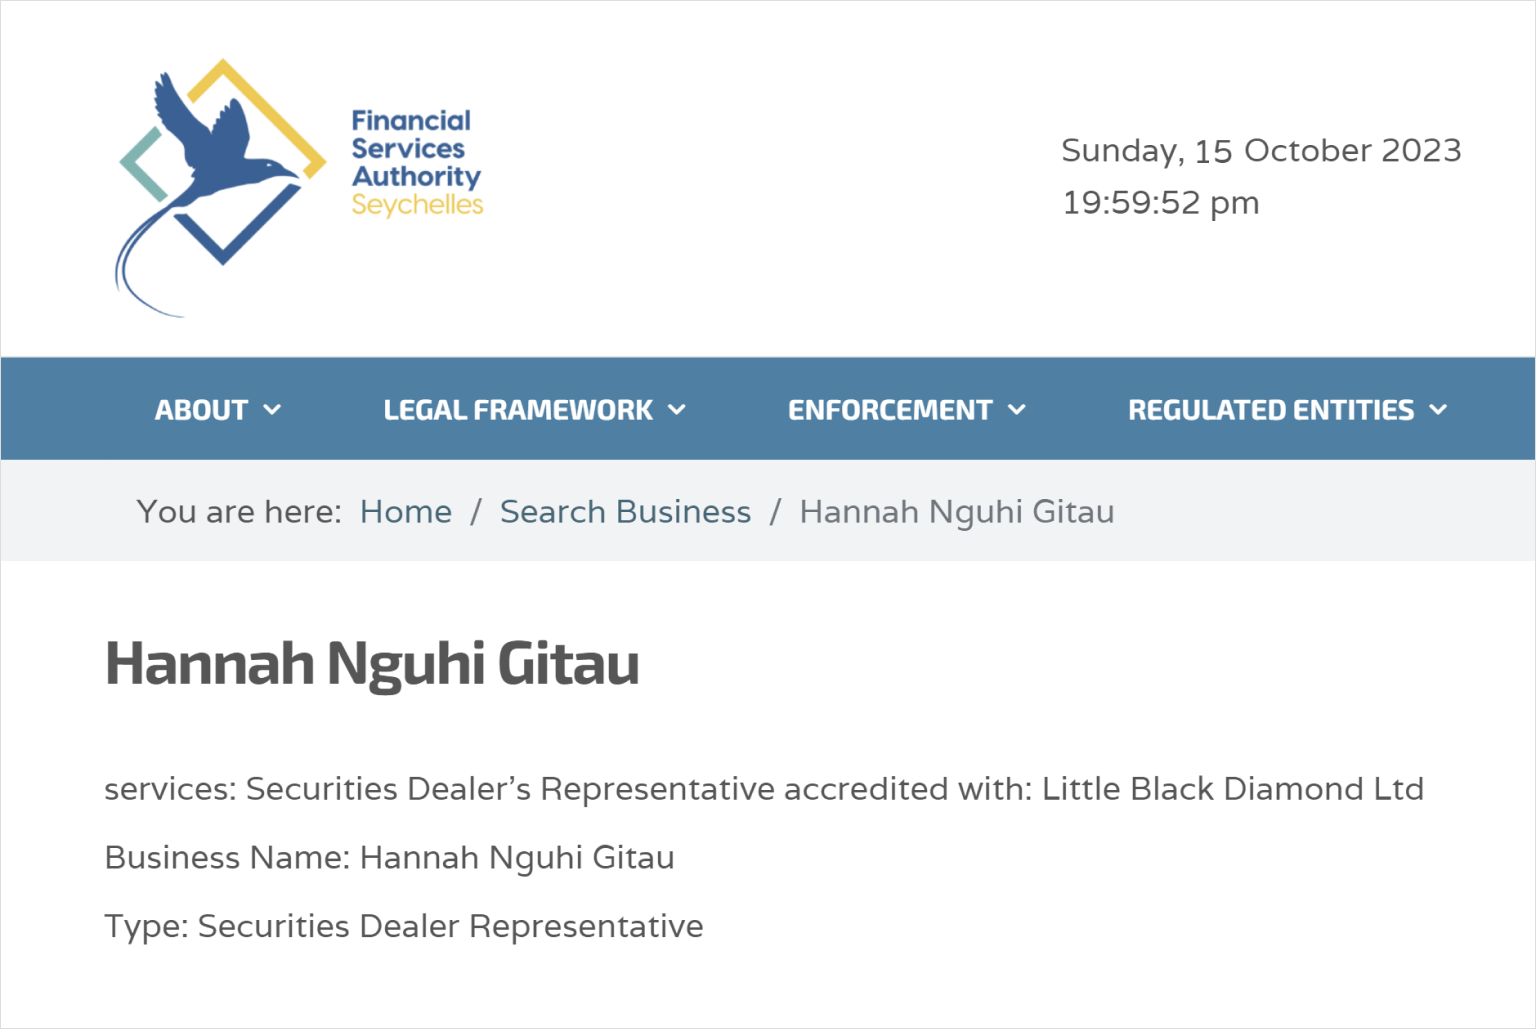 取締役の一人であるHannah Nguhi Gitau氏をセーシェル金融庁のホームページで 検索すると、同氏が証券ディーラーの代表を務めていることが表示されます。